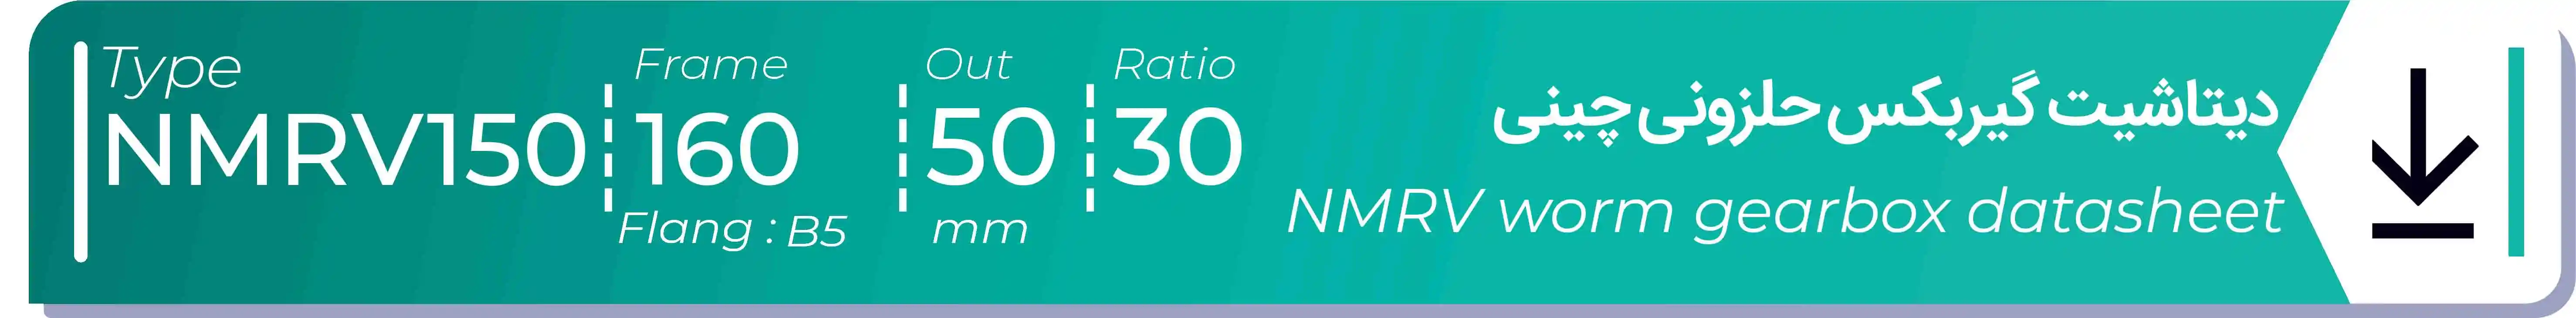  دیتاشیت و مشخصات فنی گیربکس حلزونی چینی   NMRV150  -  با خروجی 50- میلی متر و نسبت30 و فریم 160